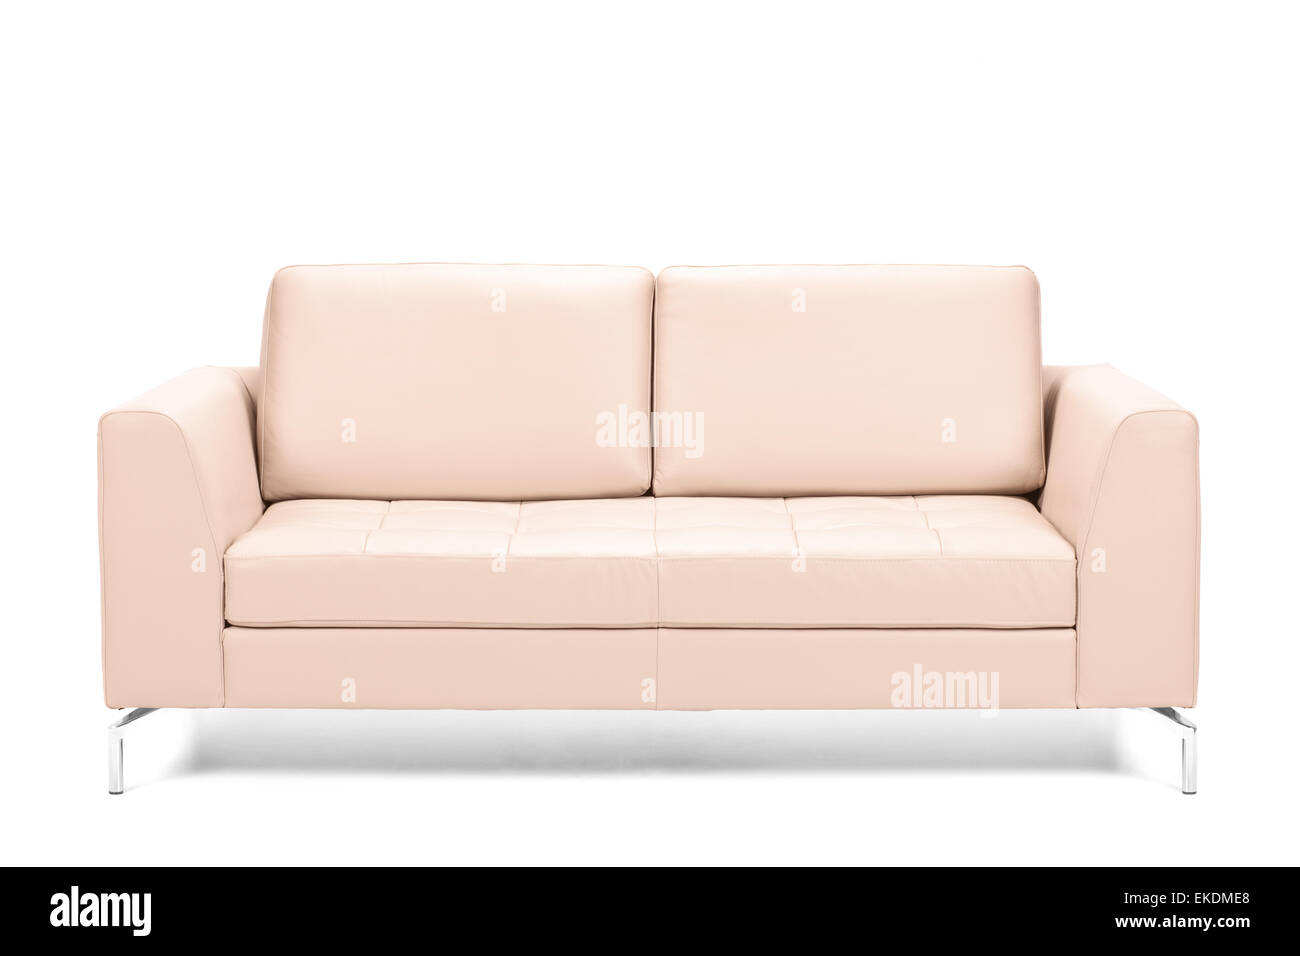 Moderni divani in pelle isolati su sfondo bianco Foto Stock